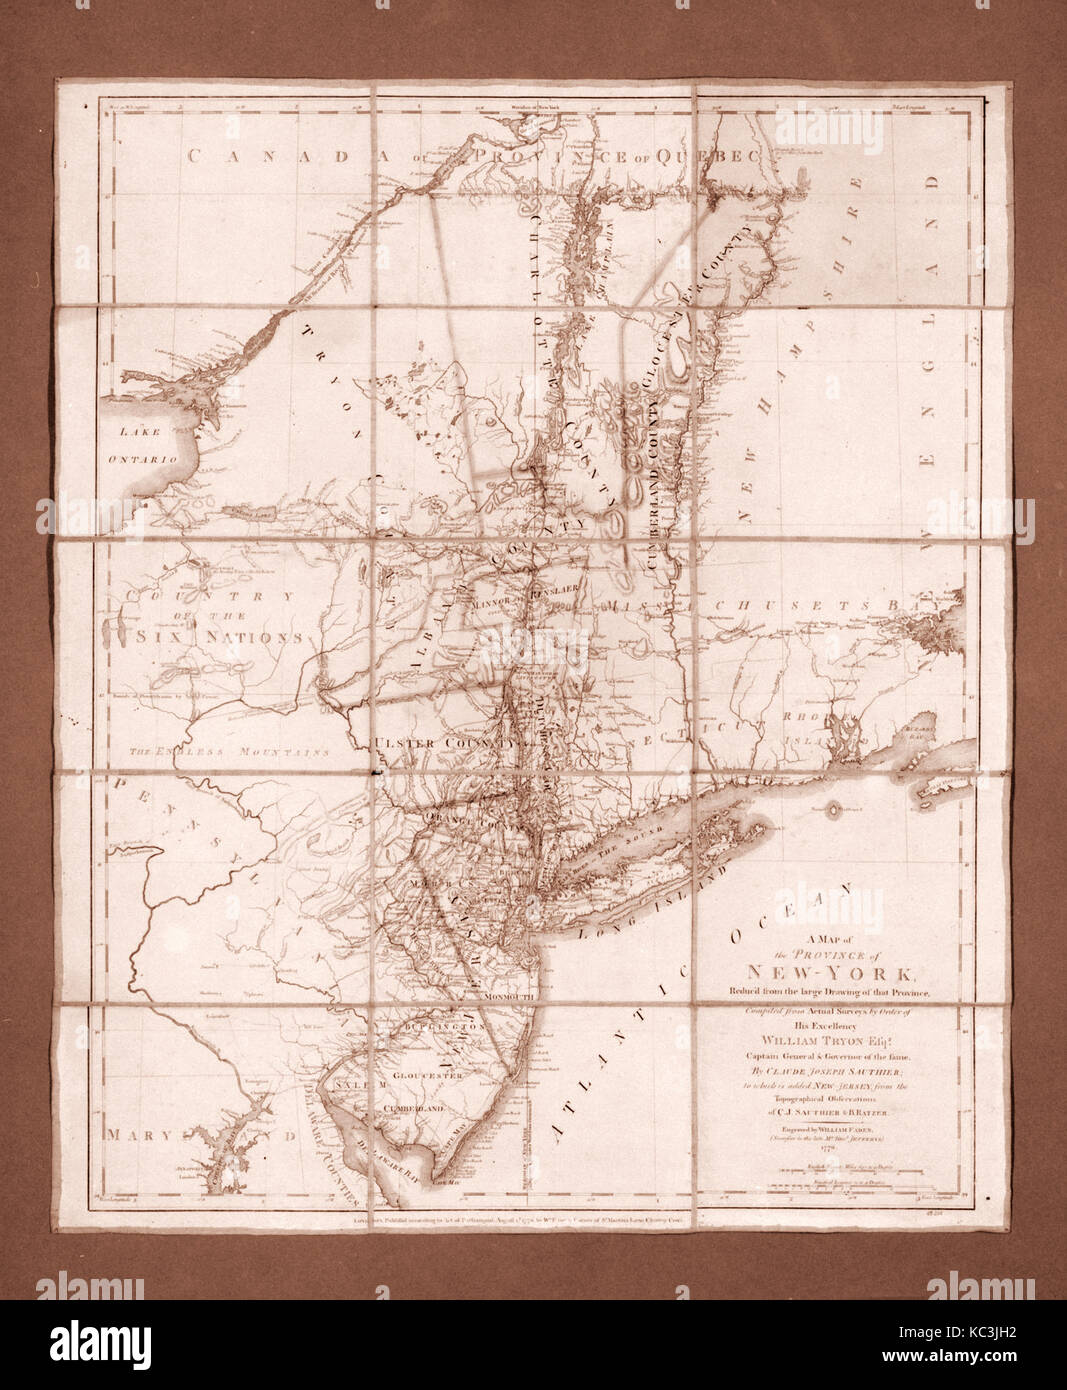 Carte de la province de New York, William Faden le Jeune, 1776 Banque D'Images